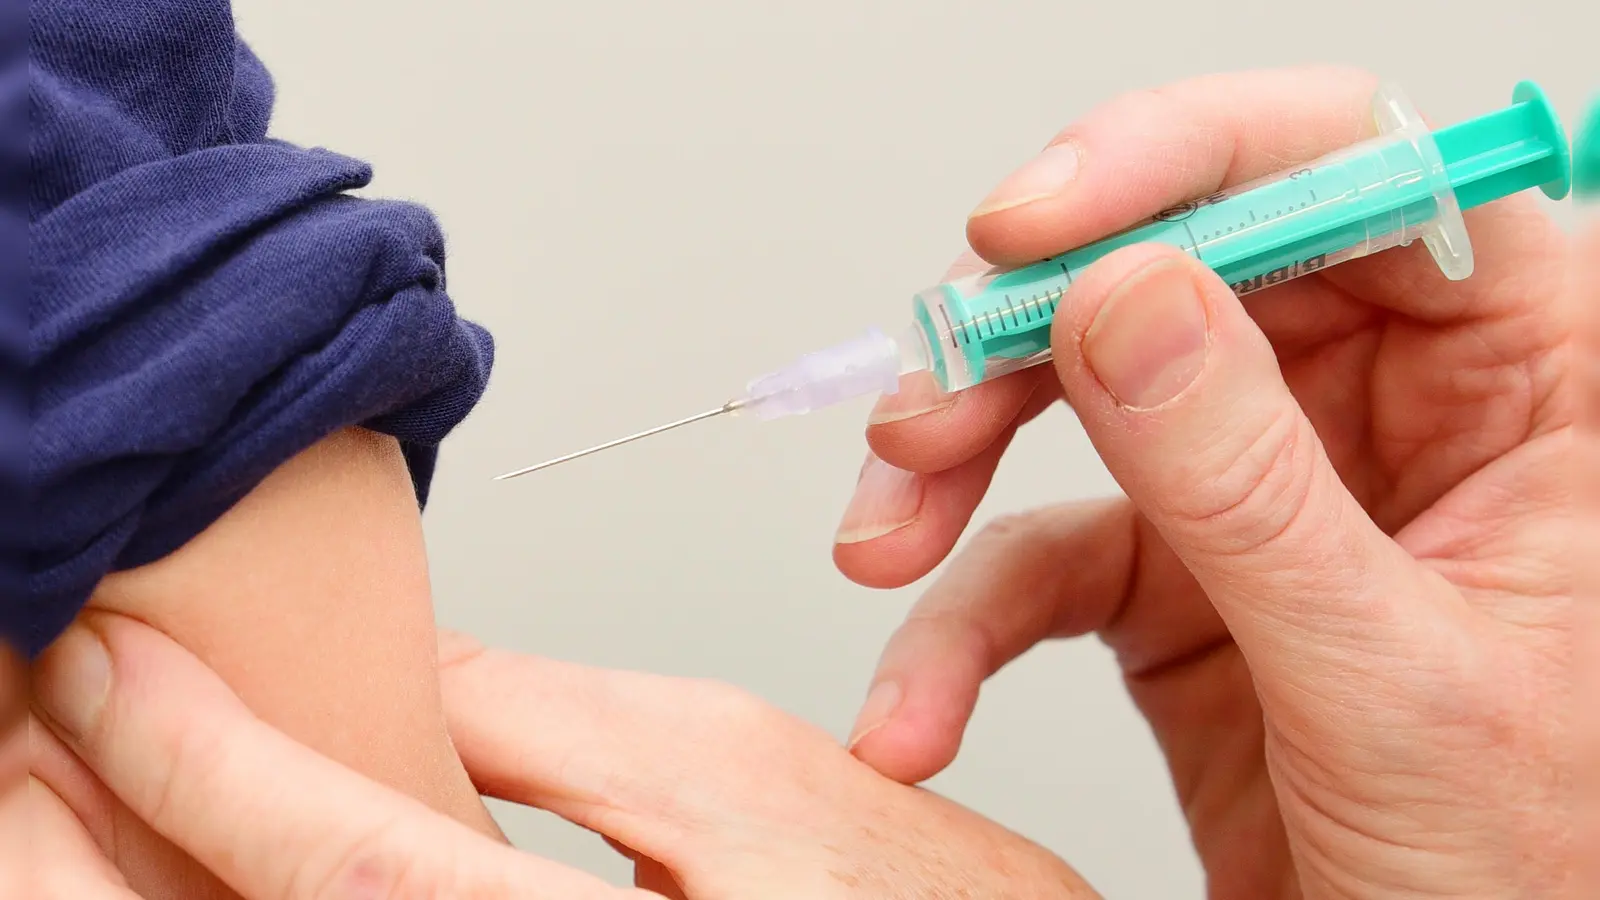 Freiwilliges Angebot: Apotheken dürfen neben der Coronaimpfung auch gegen Grippe impfen. Die Zahl hält sich aber in Grenzen. (Foto: Jim Albright)